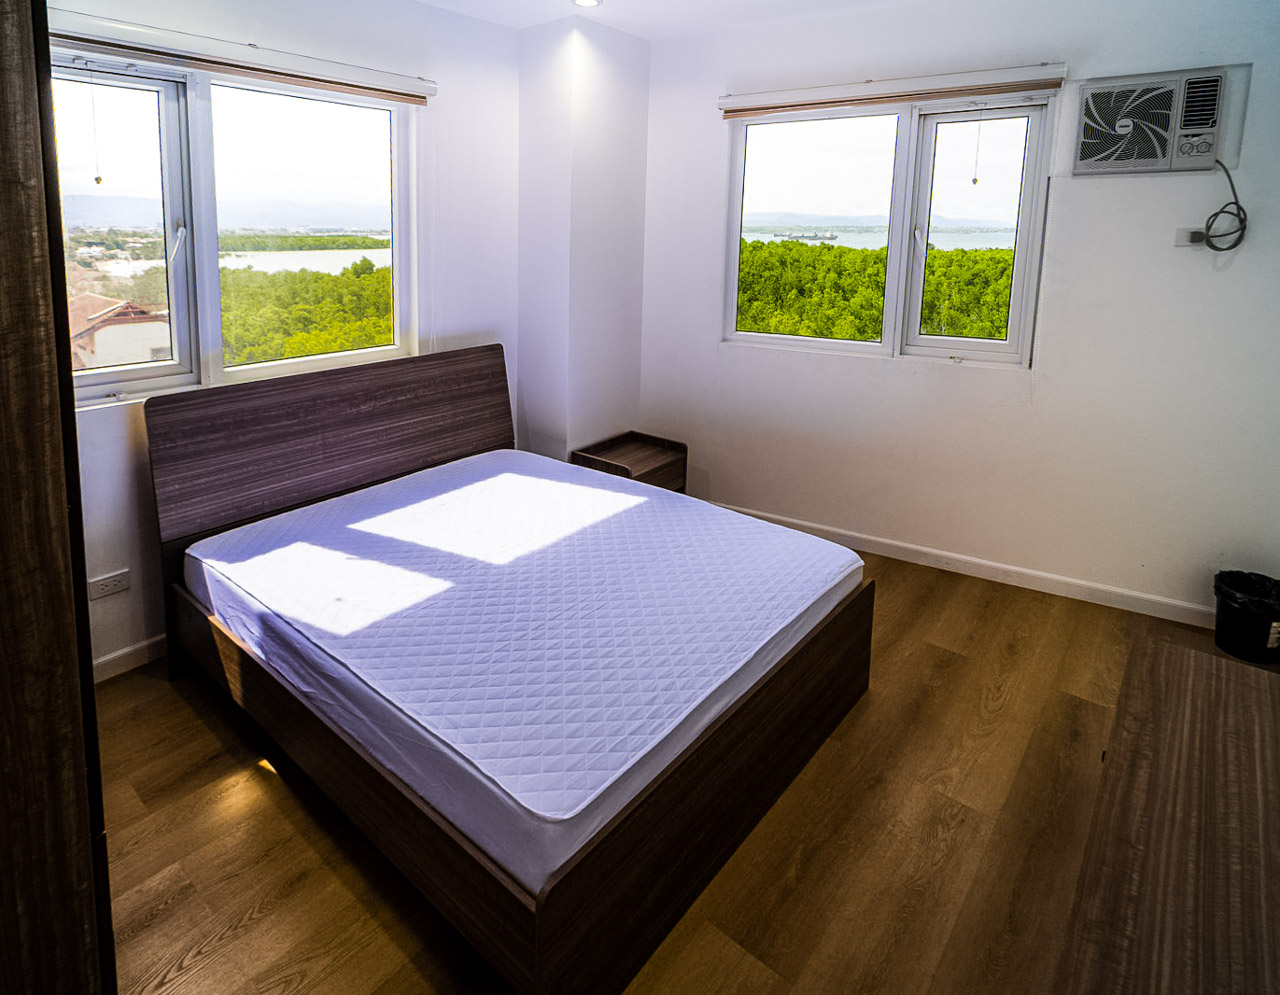 RCMRM3 Furnished 2 Bedroom Condo for Rent in Mactan Lapu-Lapu - 10